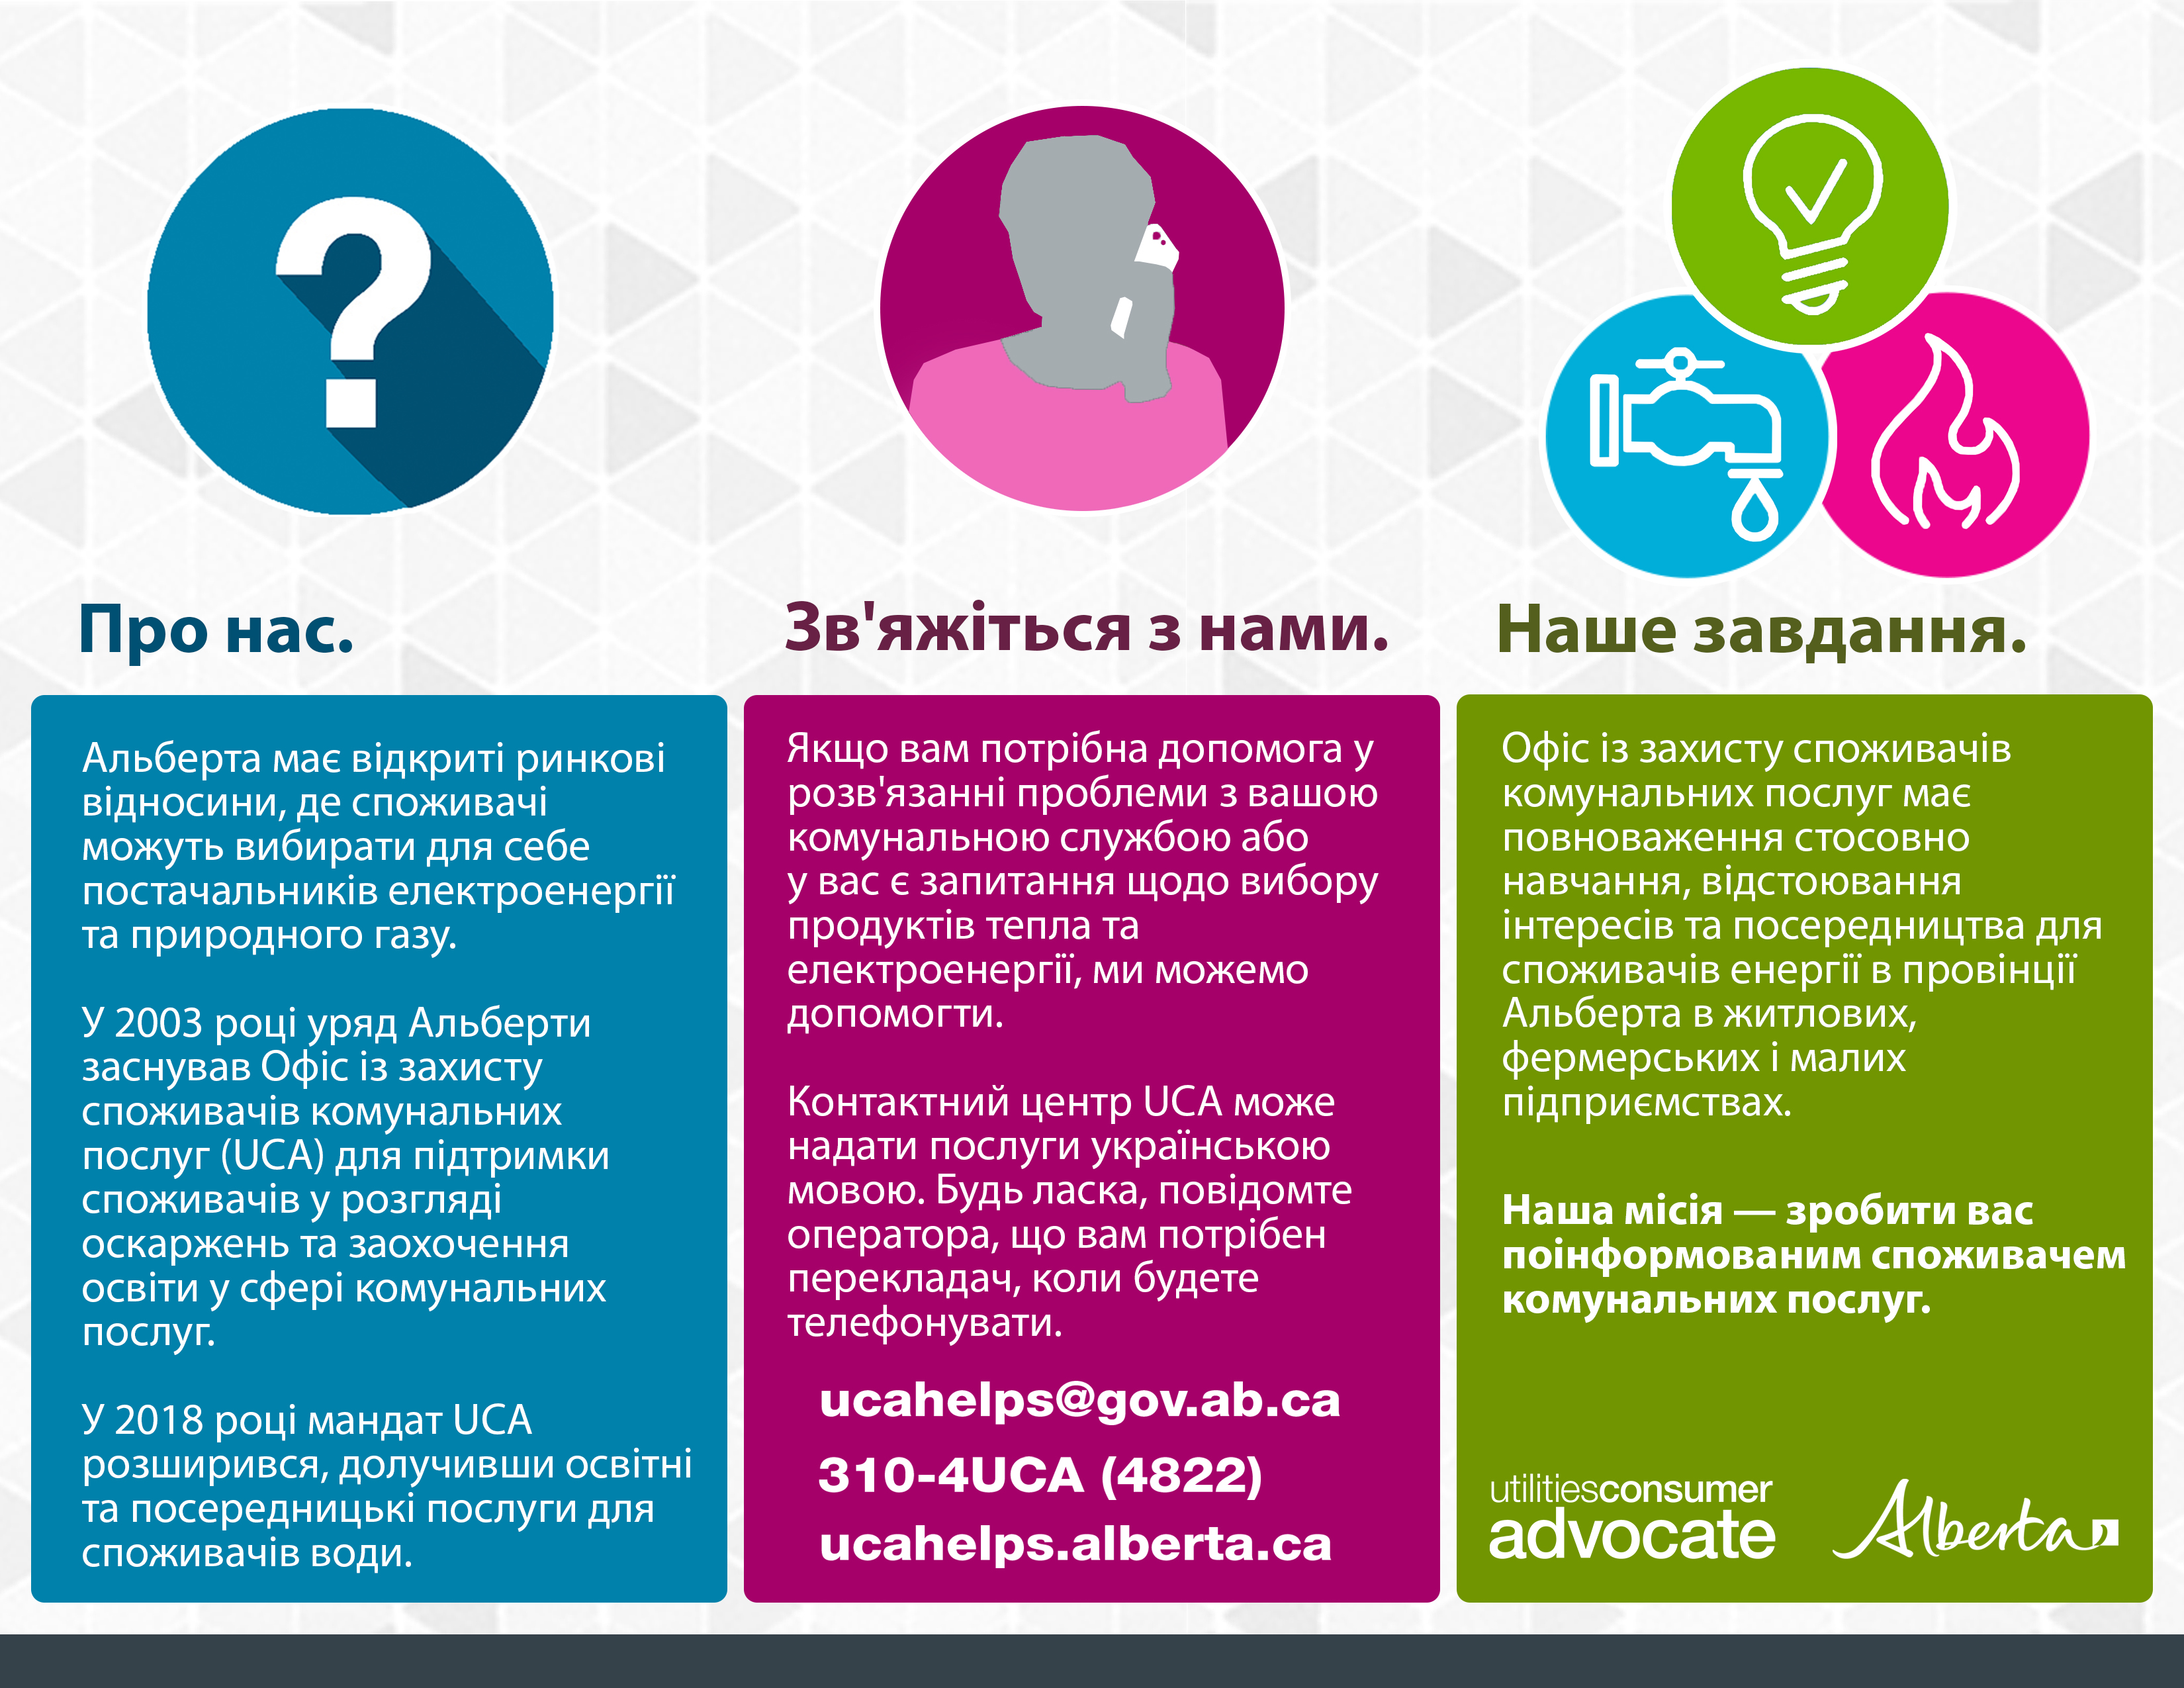 About the UCA Brochure (Ukrainian)